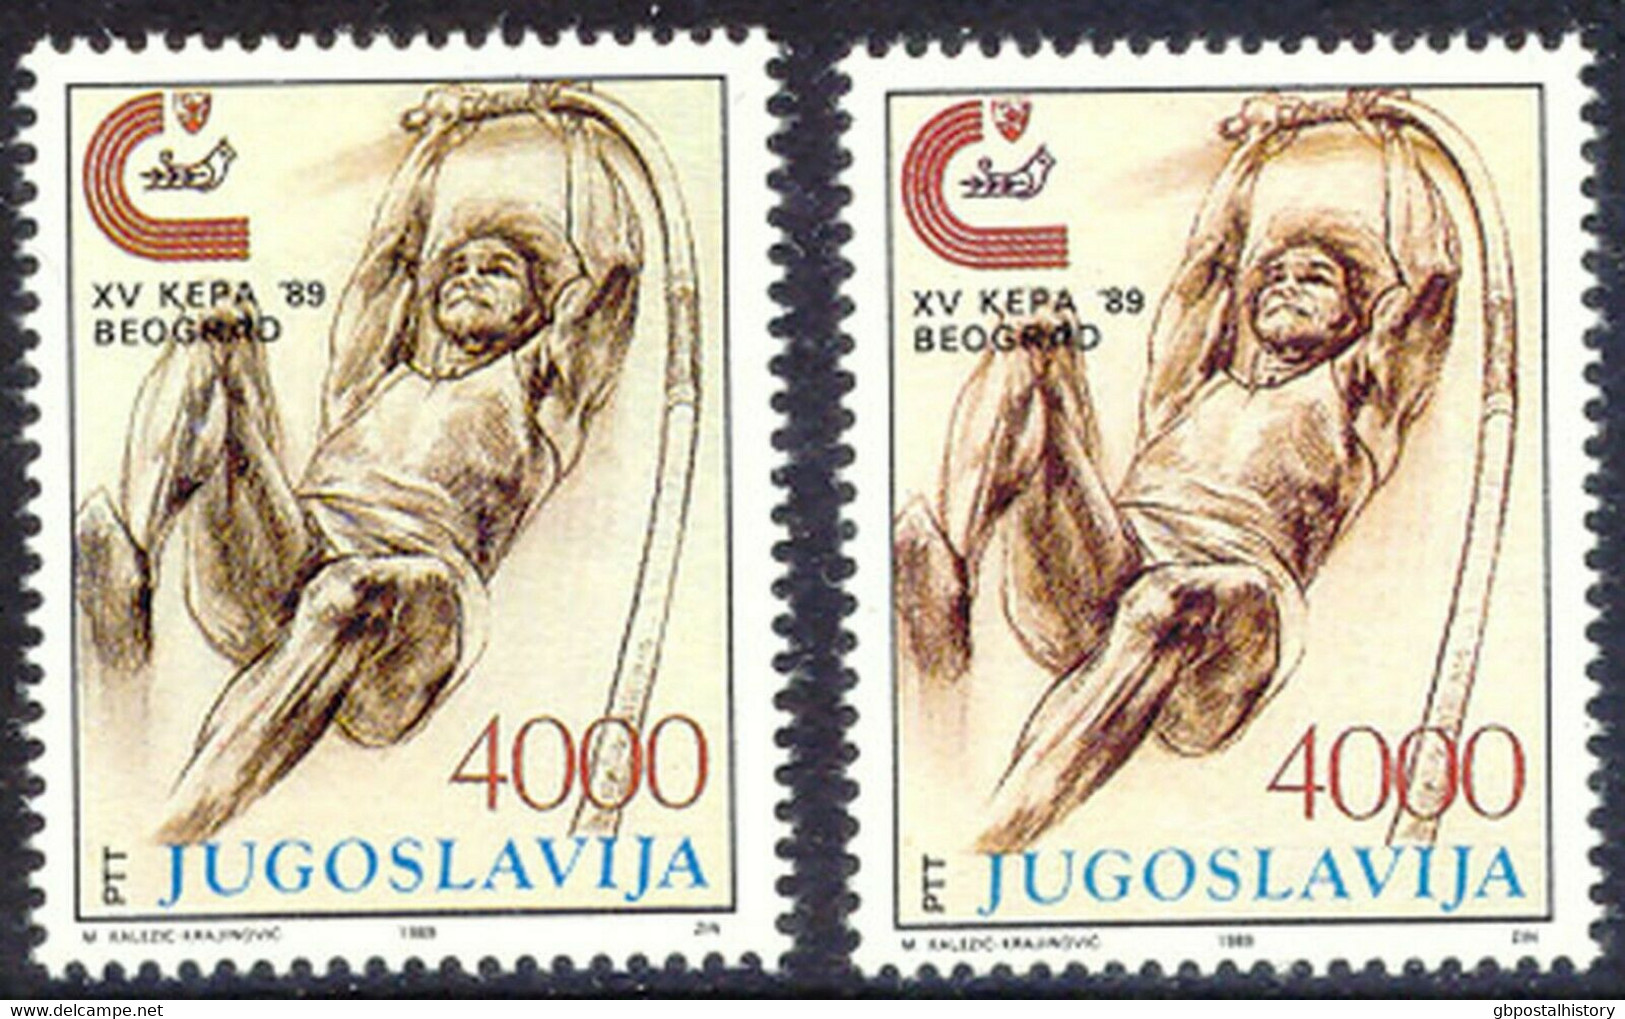 YUGOSLAVIA 1989 European Athletics Championships 4.000 (Din) U/M VARIETY MISSING COLOR - Sin Dentar, Pruebas De Impresión Y Variedades